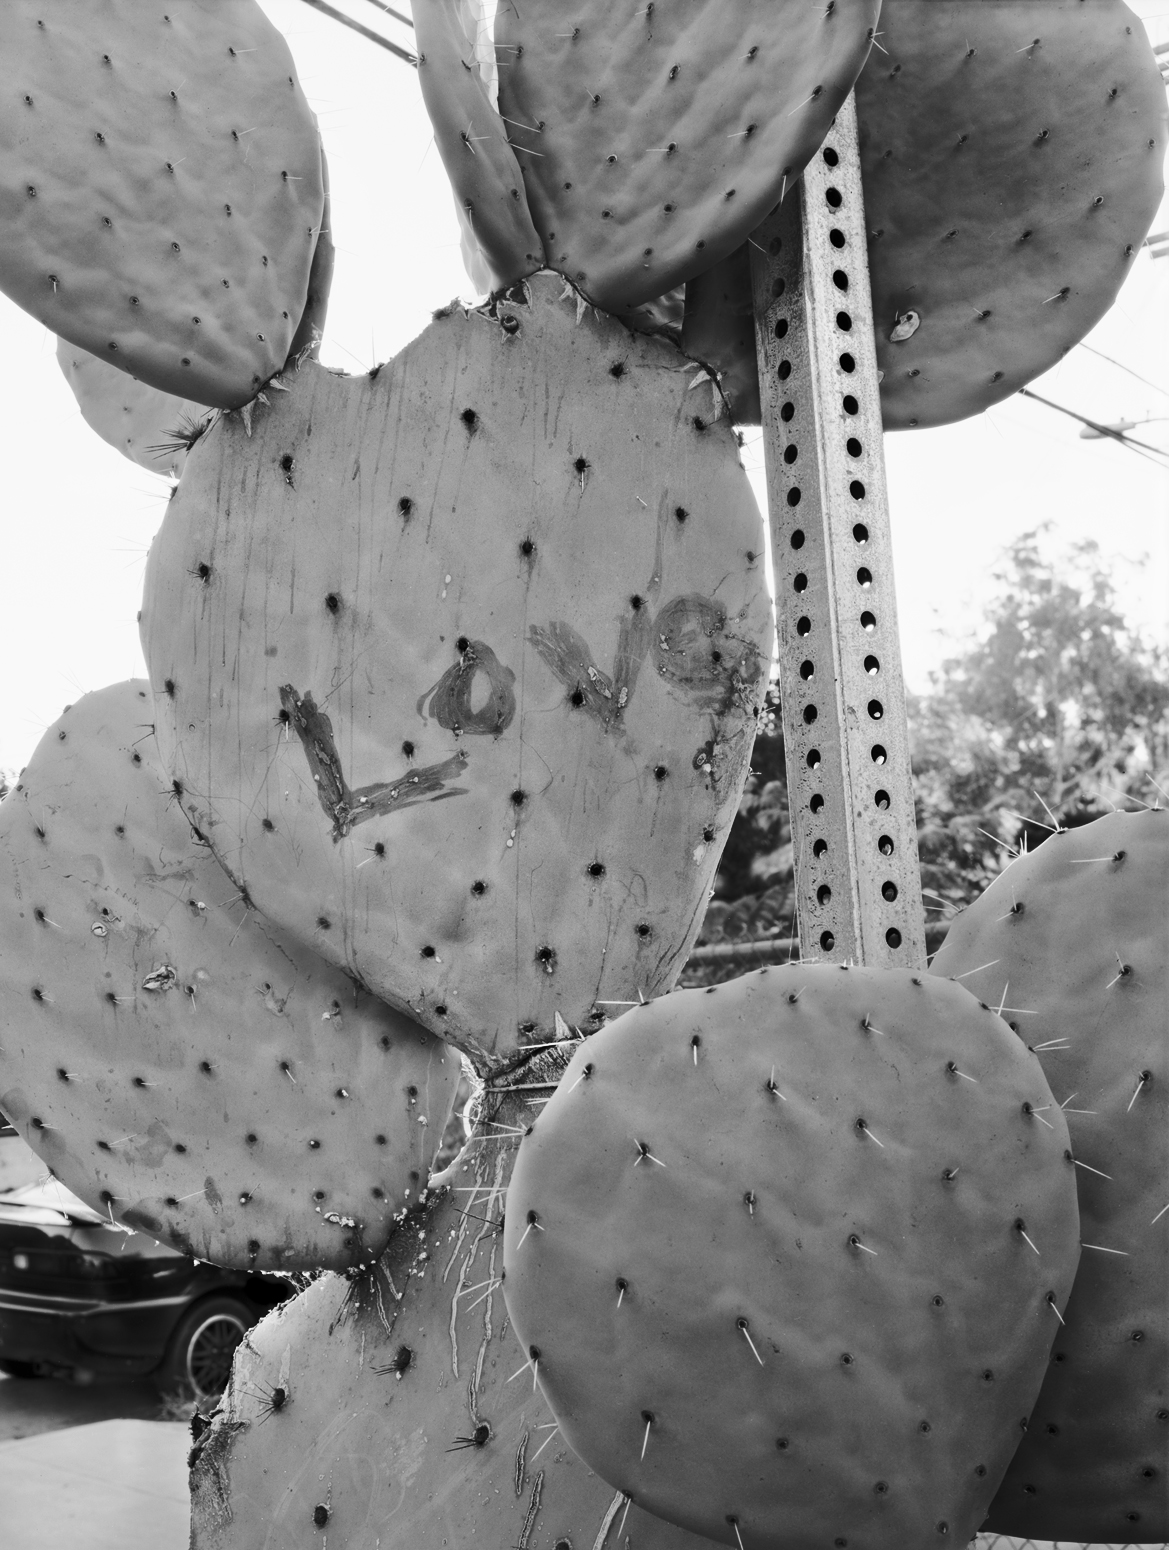 Cactus, Echo Park, L.A.